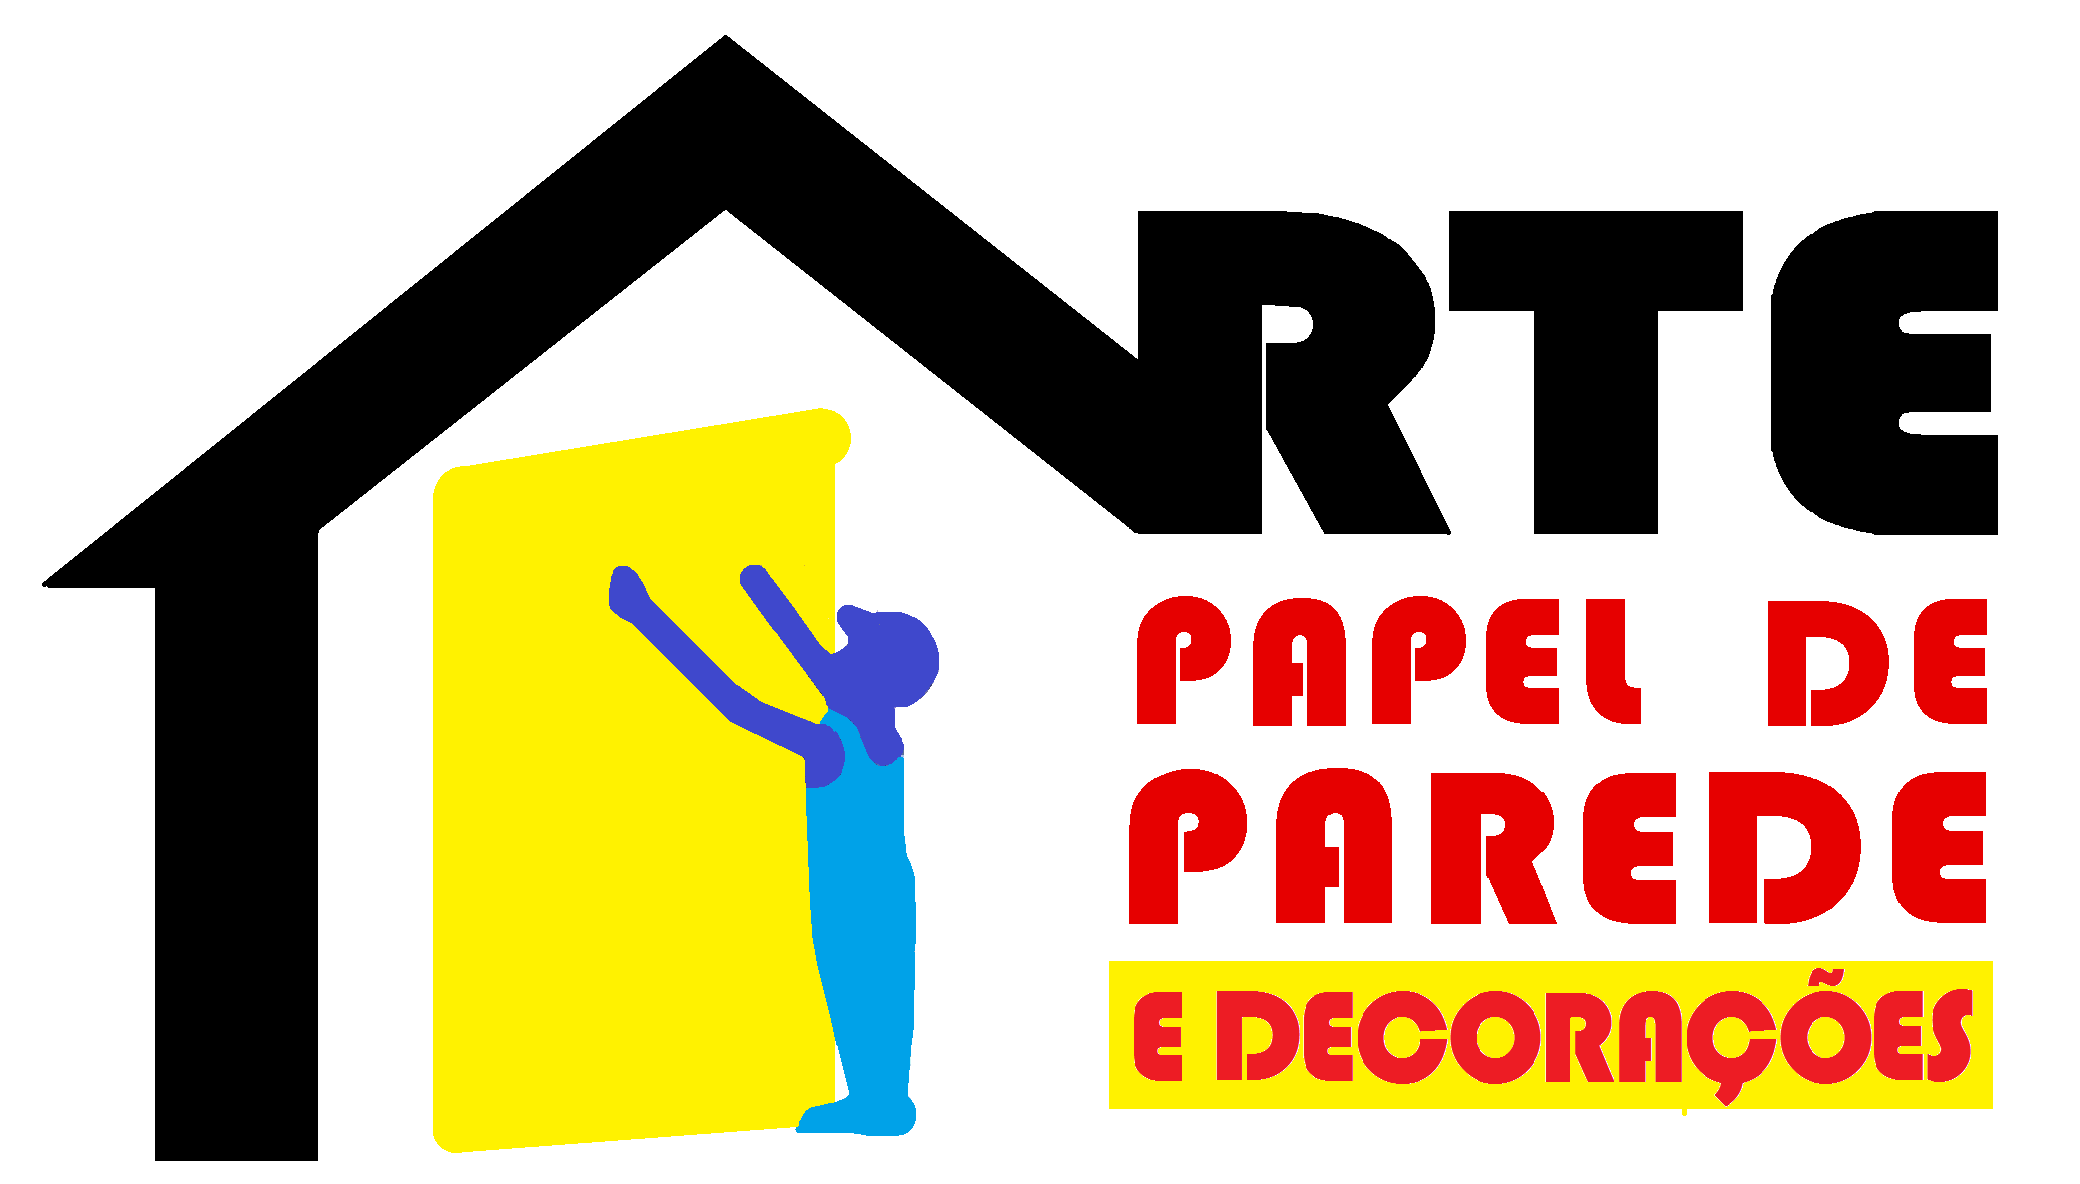 ARTE PAPEL DE PAREDE E DECORAÇÃO LTDA ME - Papel de Parede - Lojas - São Paulo, SP